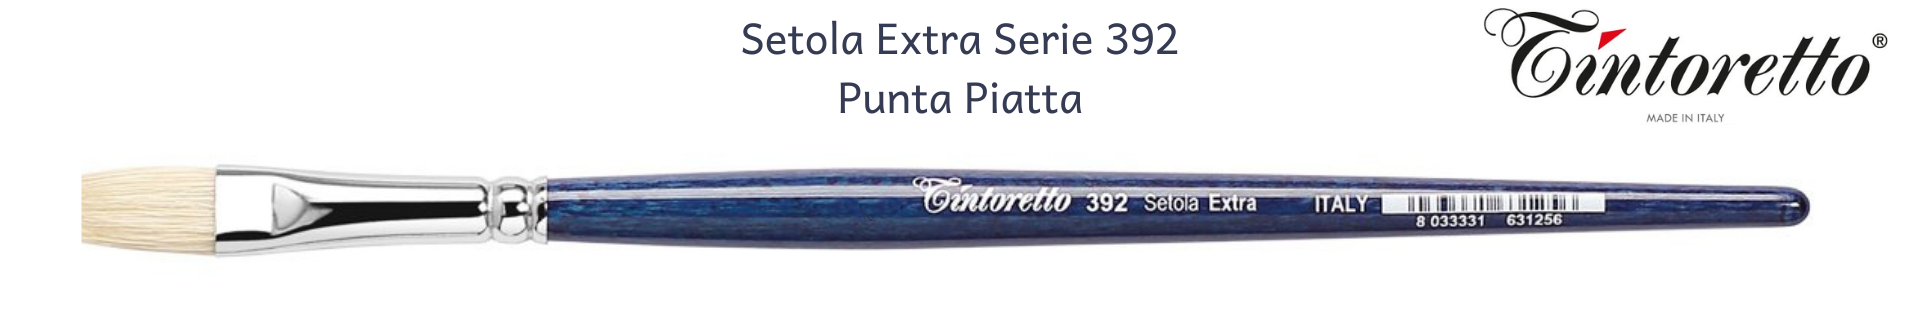 Pennelli Tintoretto Serie 392 piatti